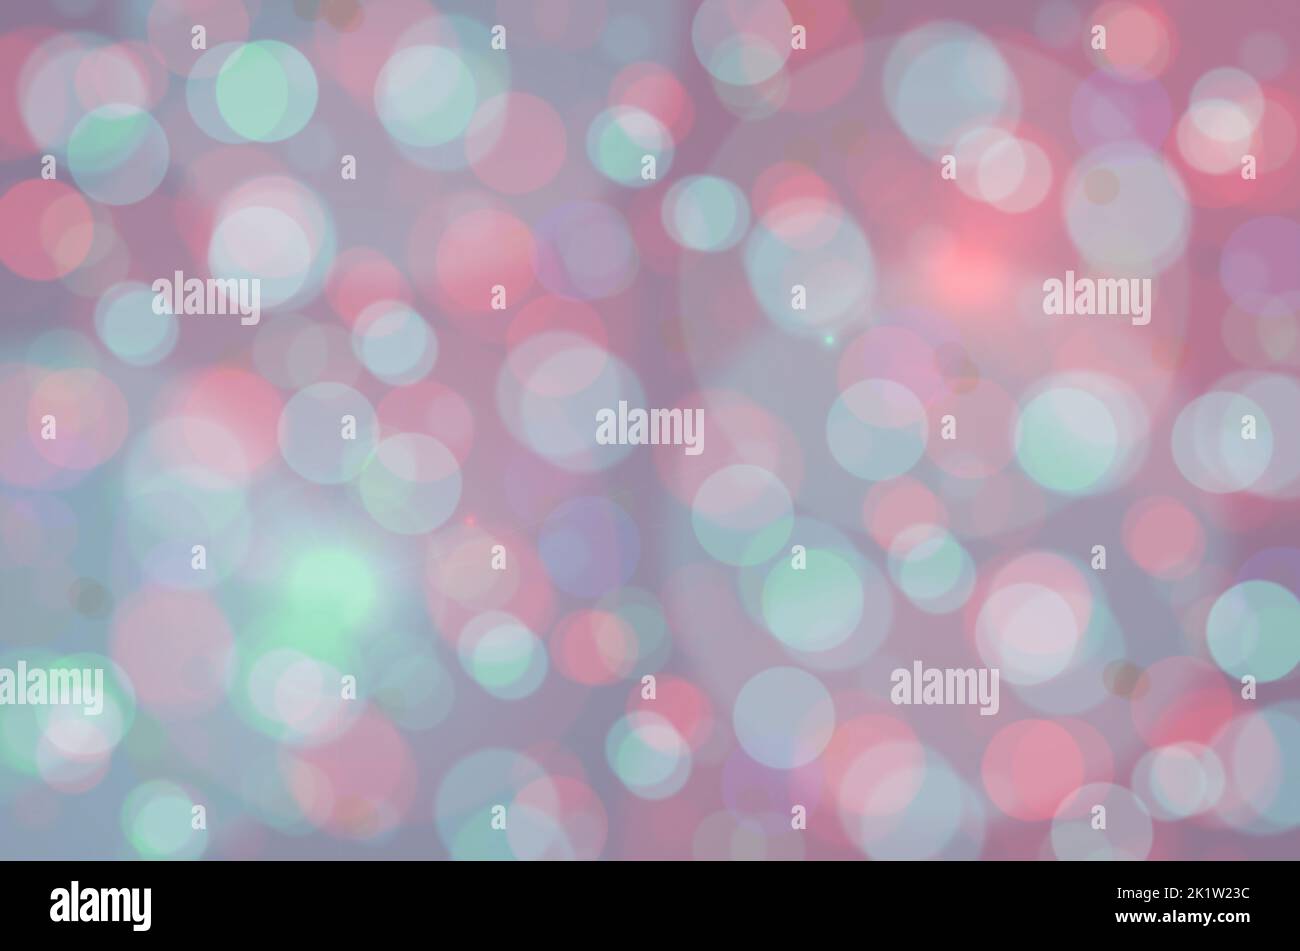 Pastell Juwel Ton Hintergrund von Bokeh Lichtflecken in schönen Farben der Schattierungen von blau, grün, rosa, lila und mehr. Abstraktes Hintergrundfoto Stockfoto